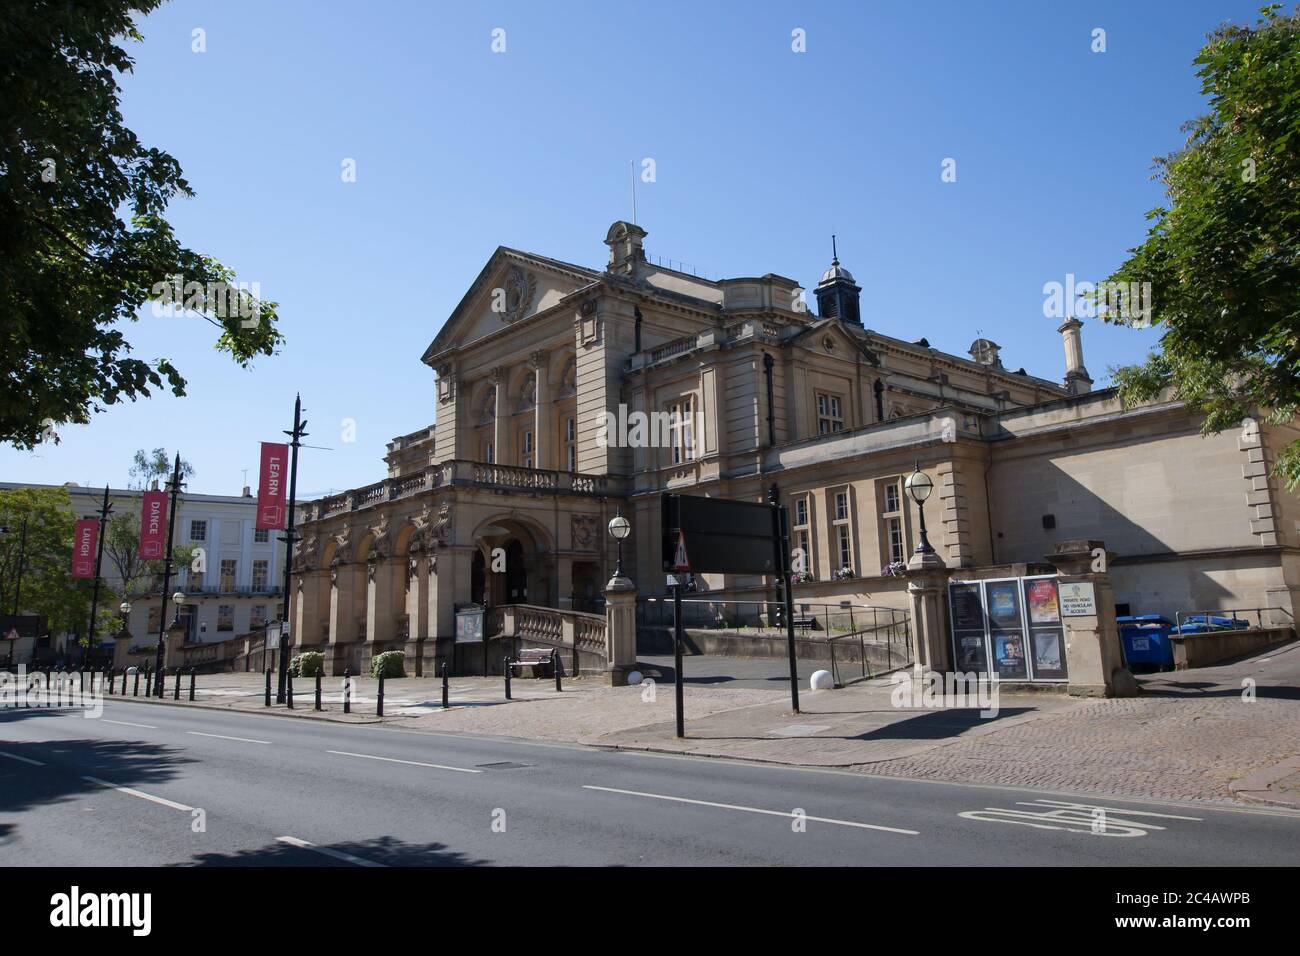 Cheltenham Town Hall in Cheltenham, Gloucestershire in the UK Stock Photo